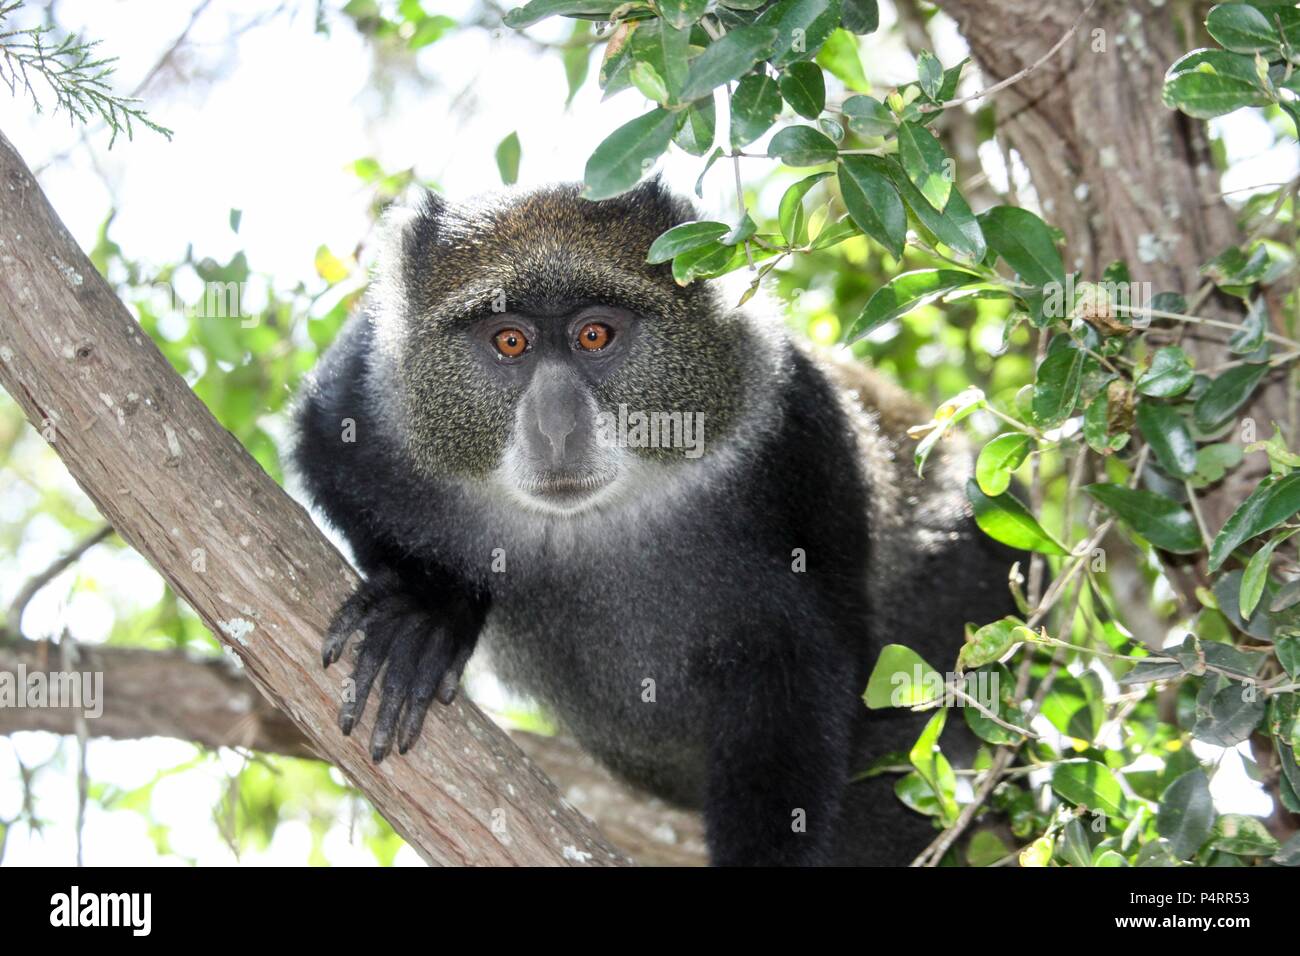 Blau, oder samango, Monkey (Cercopithecus mitis) in einen Baum. Dieser Affe lebt in Truppen, eine Verschiebung der dominanten Männchen (hier zu sehen). Dieses Primas ist ruhig und schüchtern, Leben in den Baumkronen der tropischen afrikanischen Wäldern. Er ernährt sich von Früchten, Blättern und Arthropoden. In Tansania fotografiert. Stockfoto